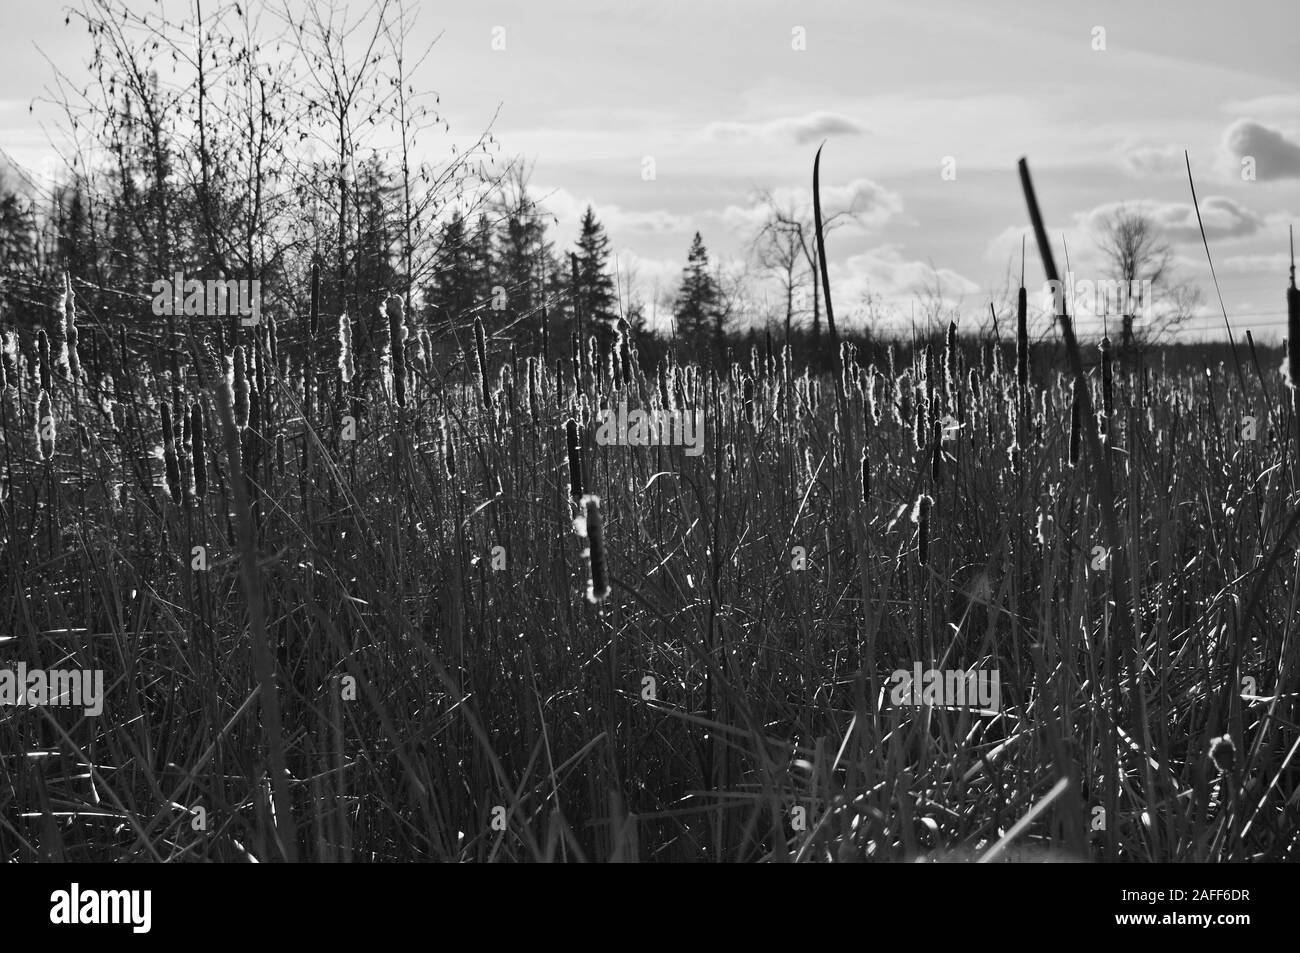 Schwarze und weiße Schoß der hohen Gräser (rohrkolben) glühende Am späten Nachmittag Winter Sonne, steinigen Sumpf Feuchtgebiete, Ottawa, Ontario, Kanada. Stockfoto